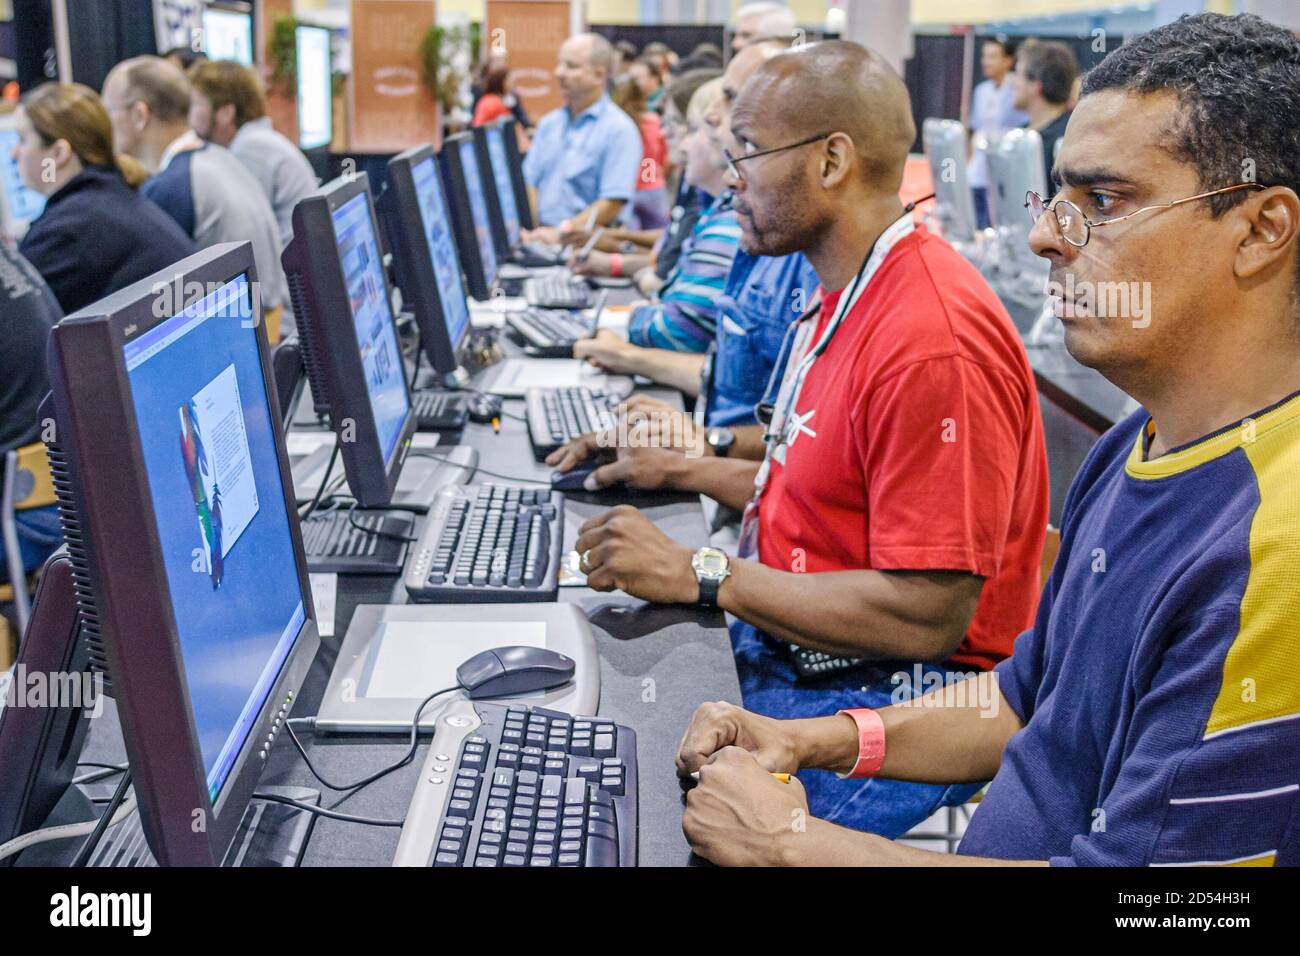 Florida,Miami Beach Convention Center,centre,Photoshop World Technology man hommes hispanique Black African utilisant l'ordinateur Adobe,écran de moniteur clavier, Banque D'Images